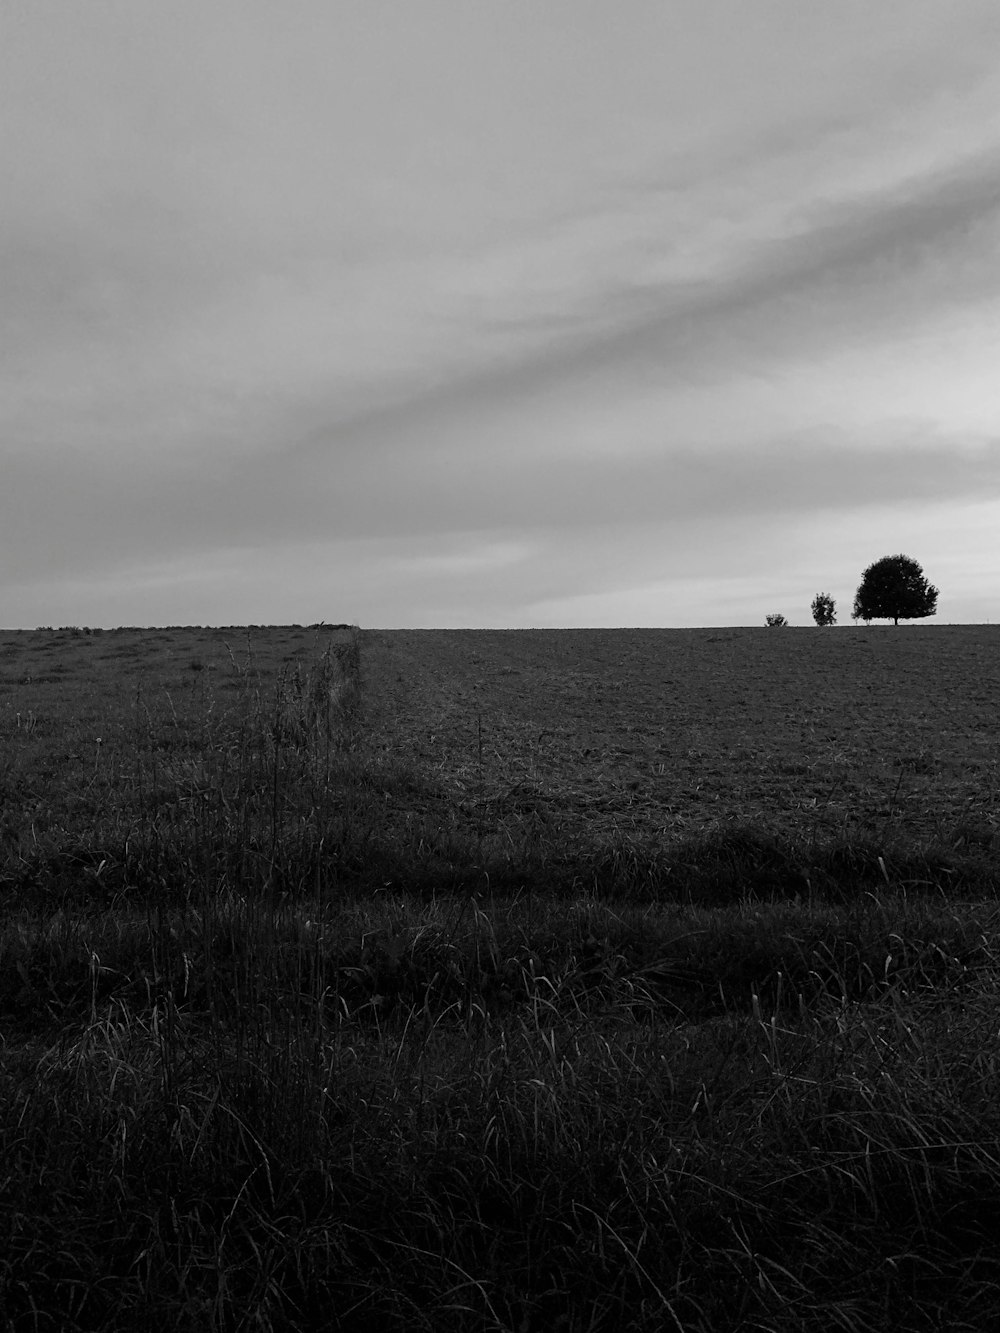 Fotografia in scala di grigi del campo durante il giorno